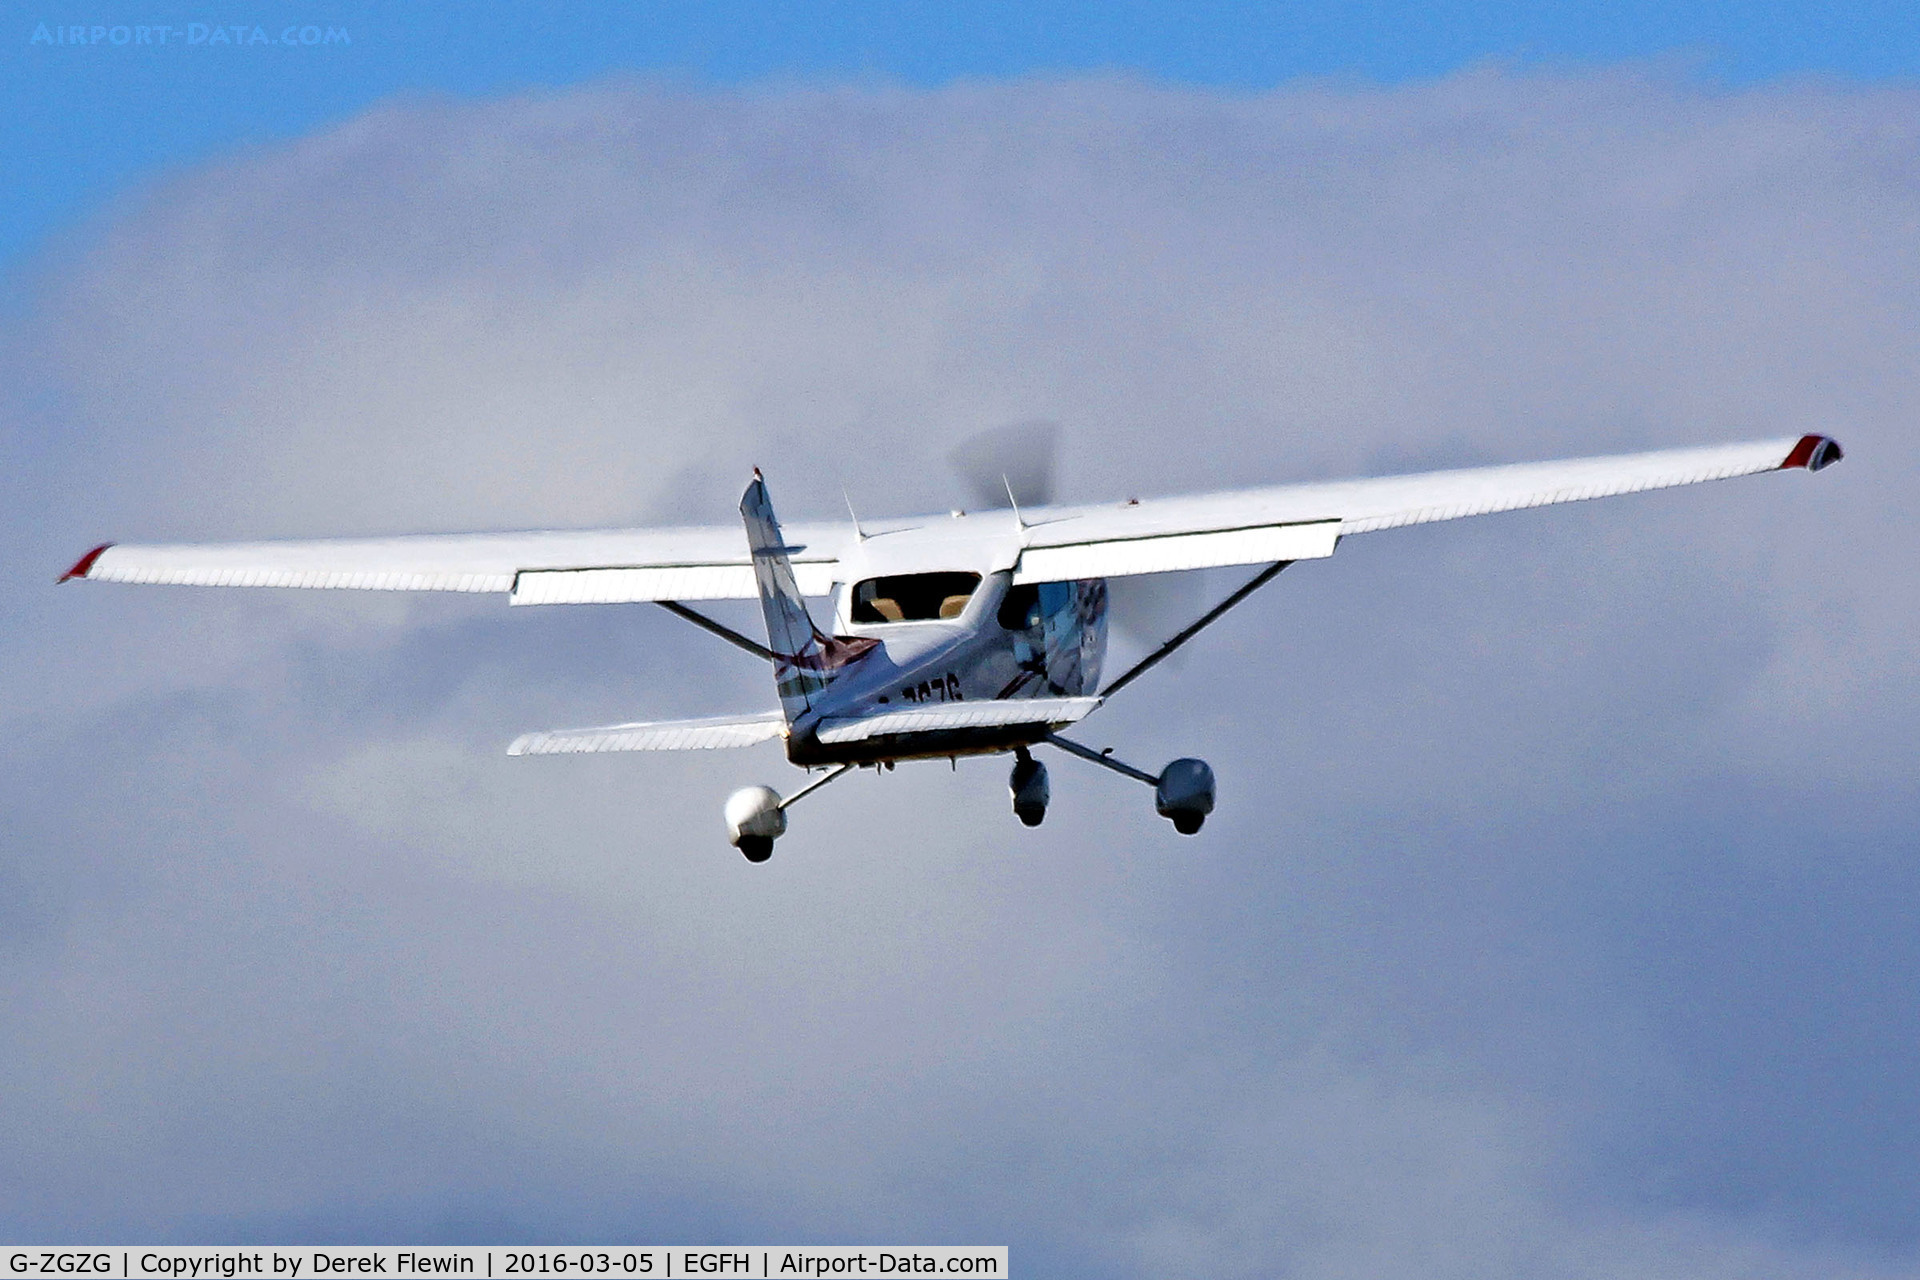 G-ZGZG, 2007 Cessna 182T Skylane C/N 18282036, Skylane, Shoreham based, previously N12722, seen departing runway 04 en-route RTB.